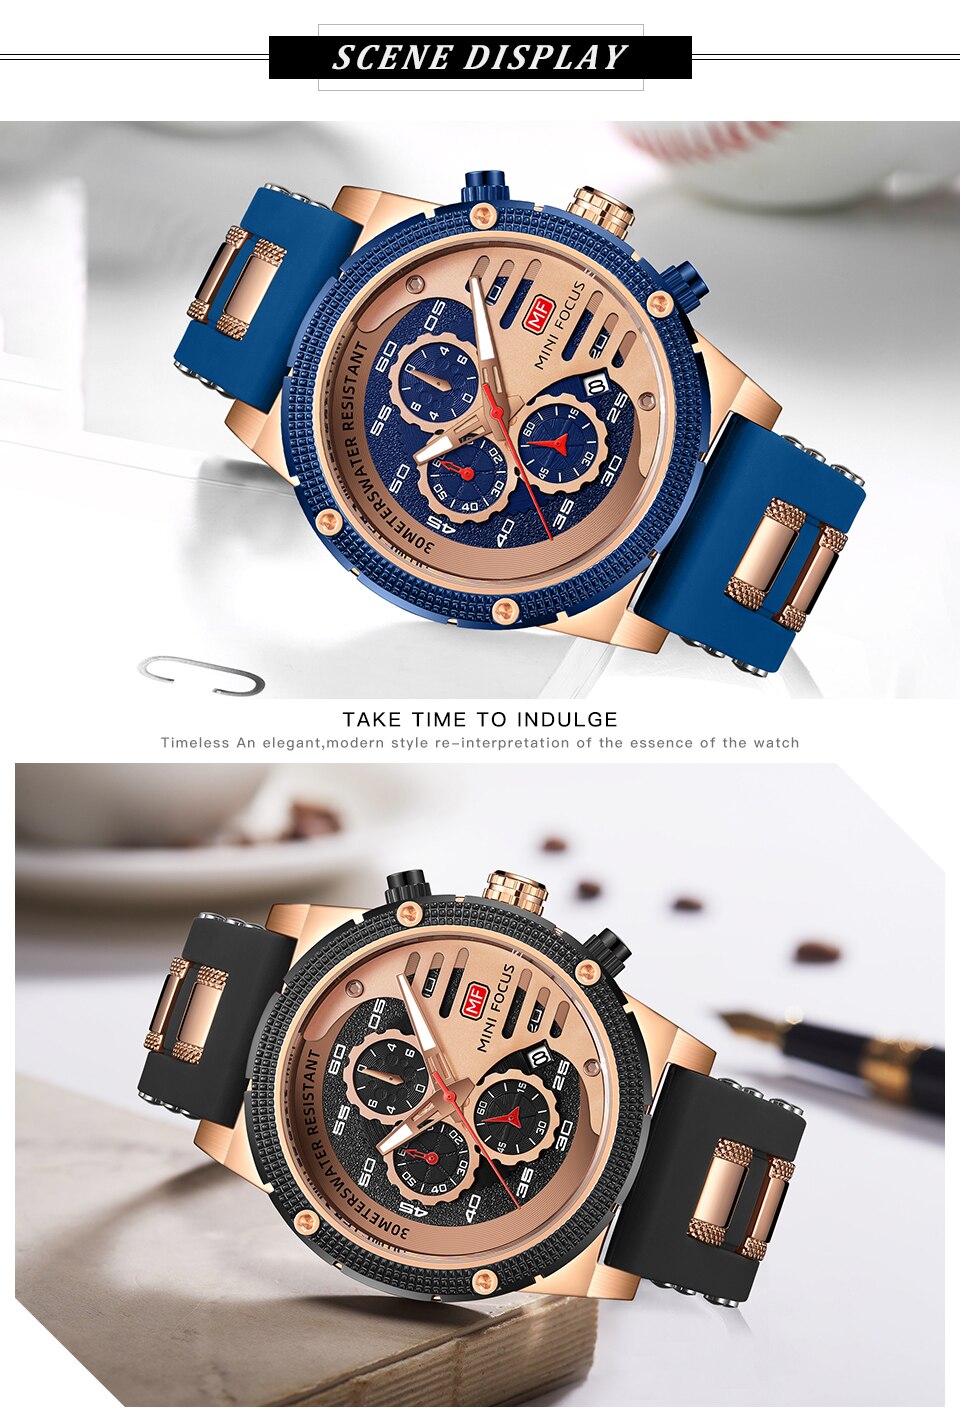 MINI FOCUS Fashion Men's Watches Luxury Brand Quartz Waterproof Sports Wristwatch Relogio Masculino Reloj Hombre Silicone Strap